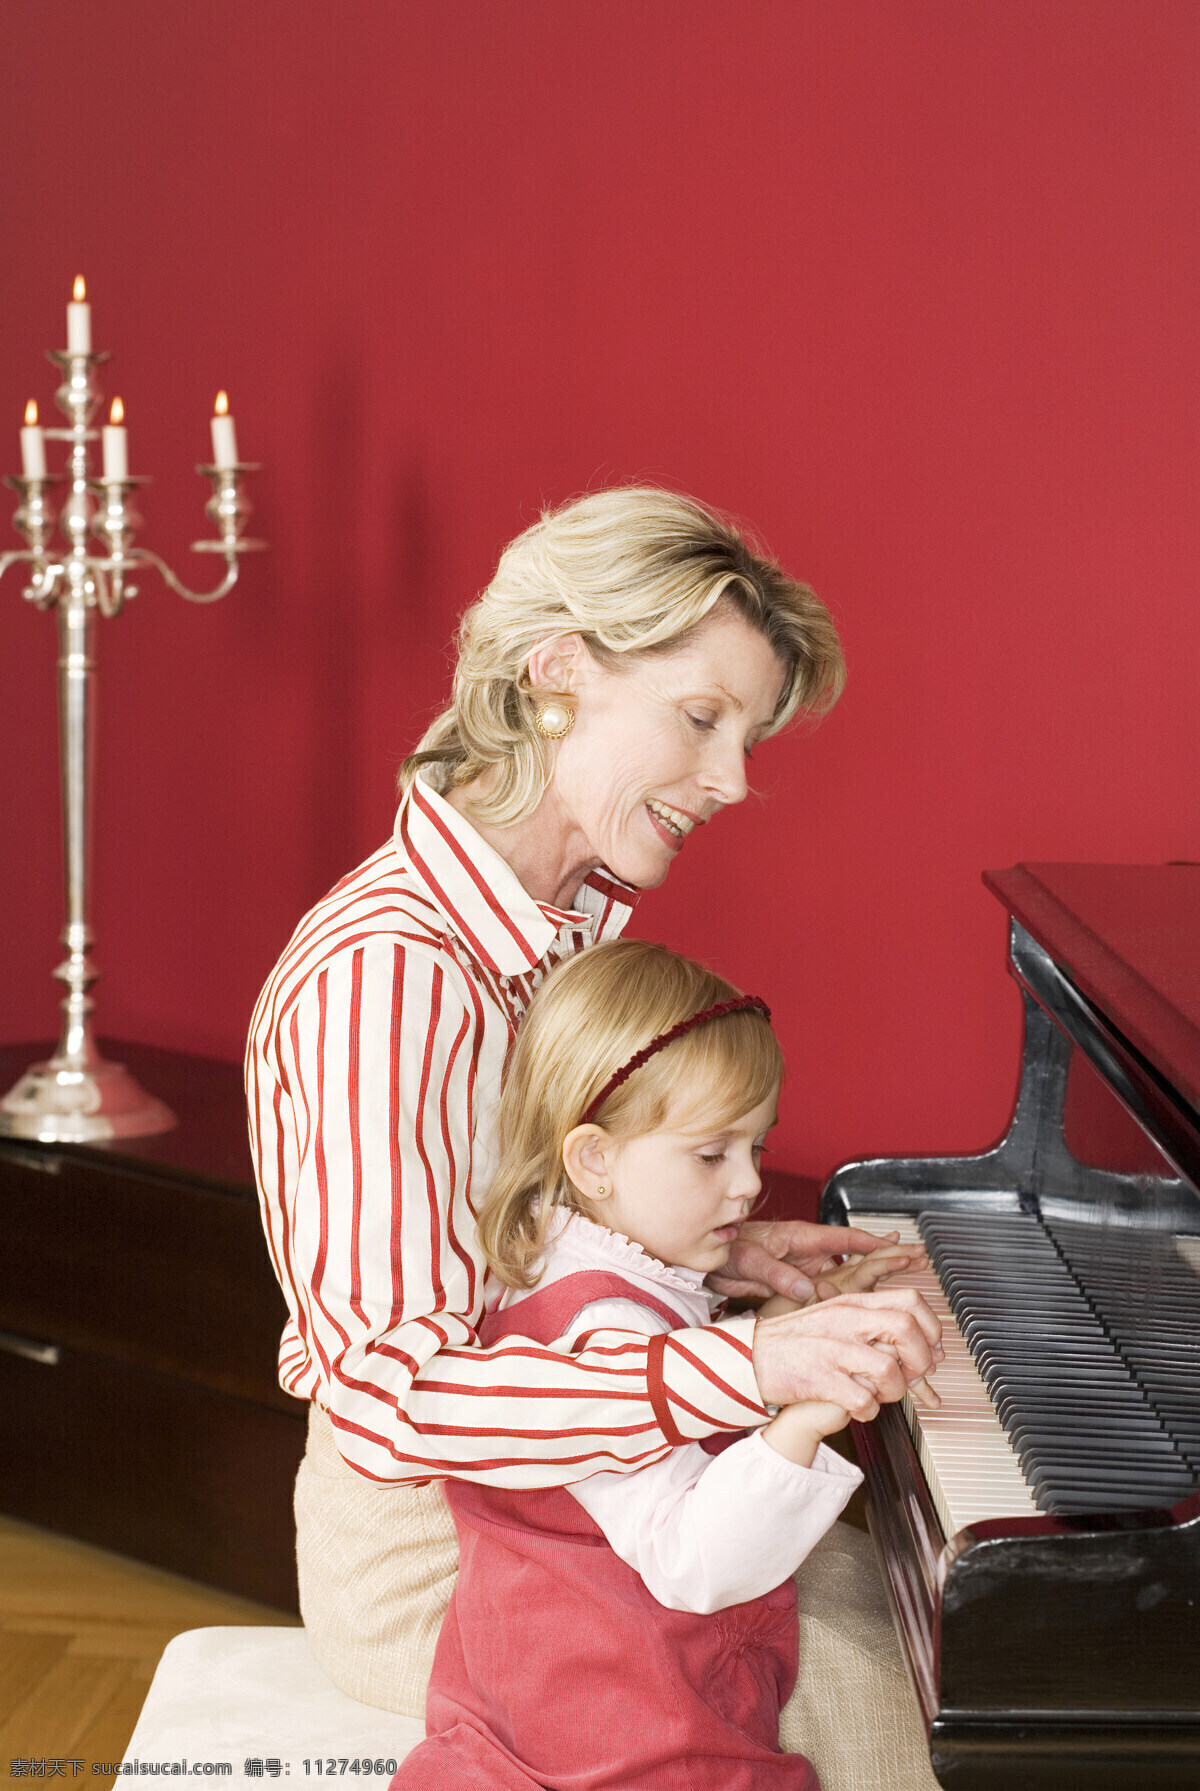 正 在教 弹 钢琴 女人 节日 圣诞节 圣诞礼物 圣诞树 快乐 开心 人物 弹钢琴 小女孩 生活人物 人物图片